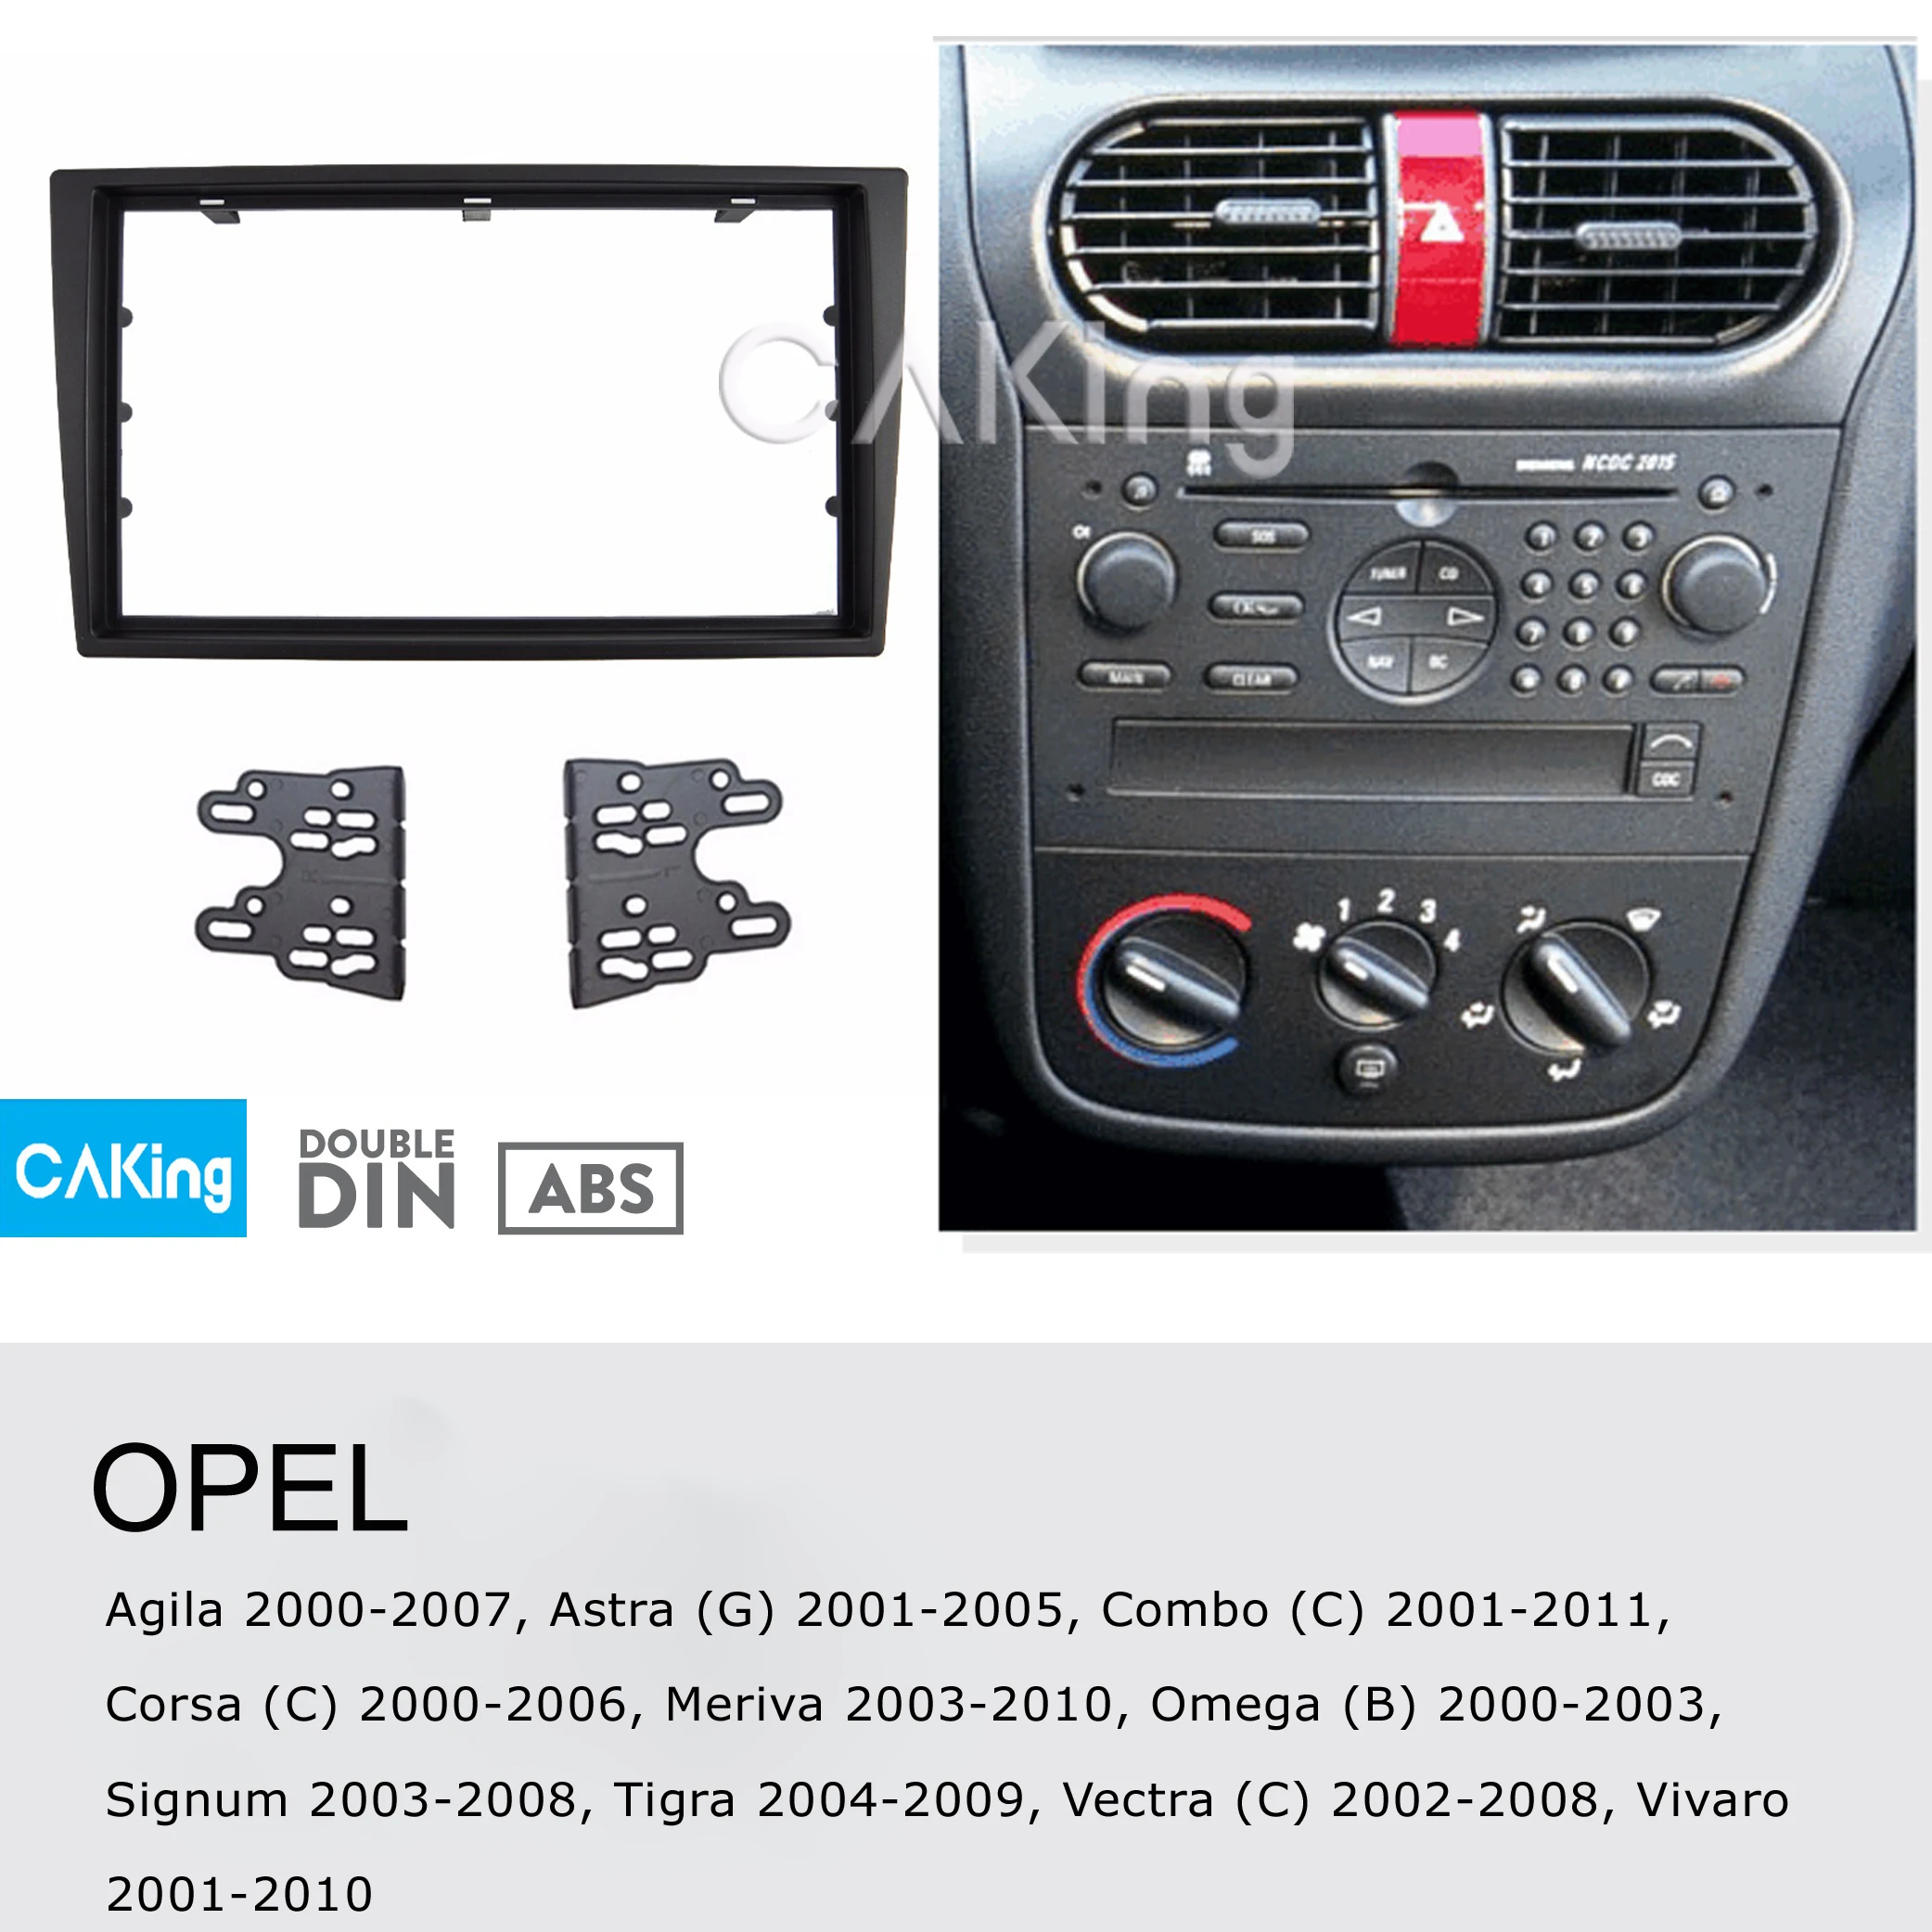 PC5-110 FP-19-00 S Opel Corsa Meriva Silver Fascia Facia Adaptor Panel Trim 